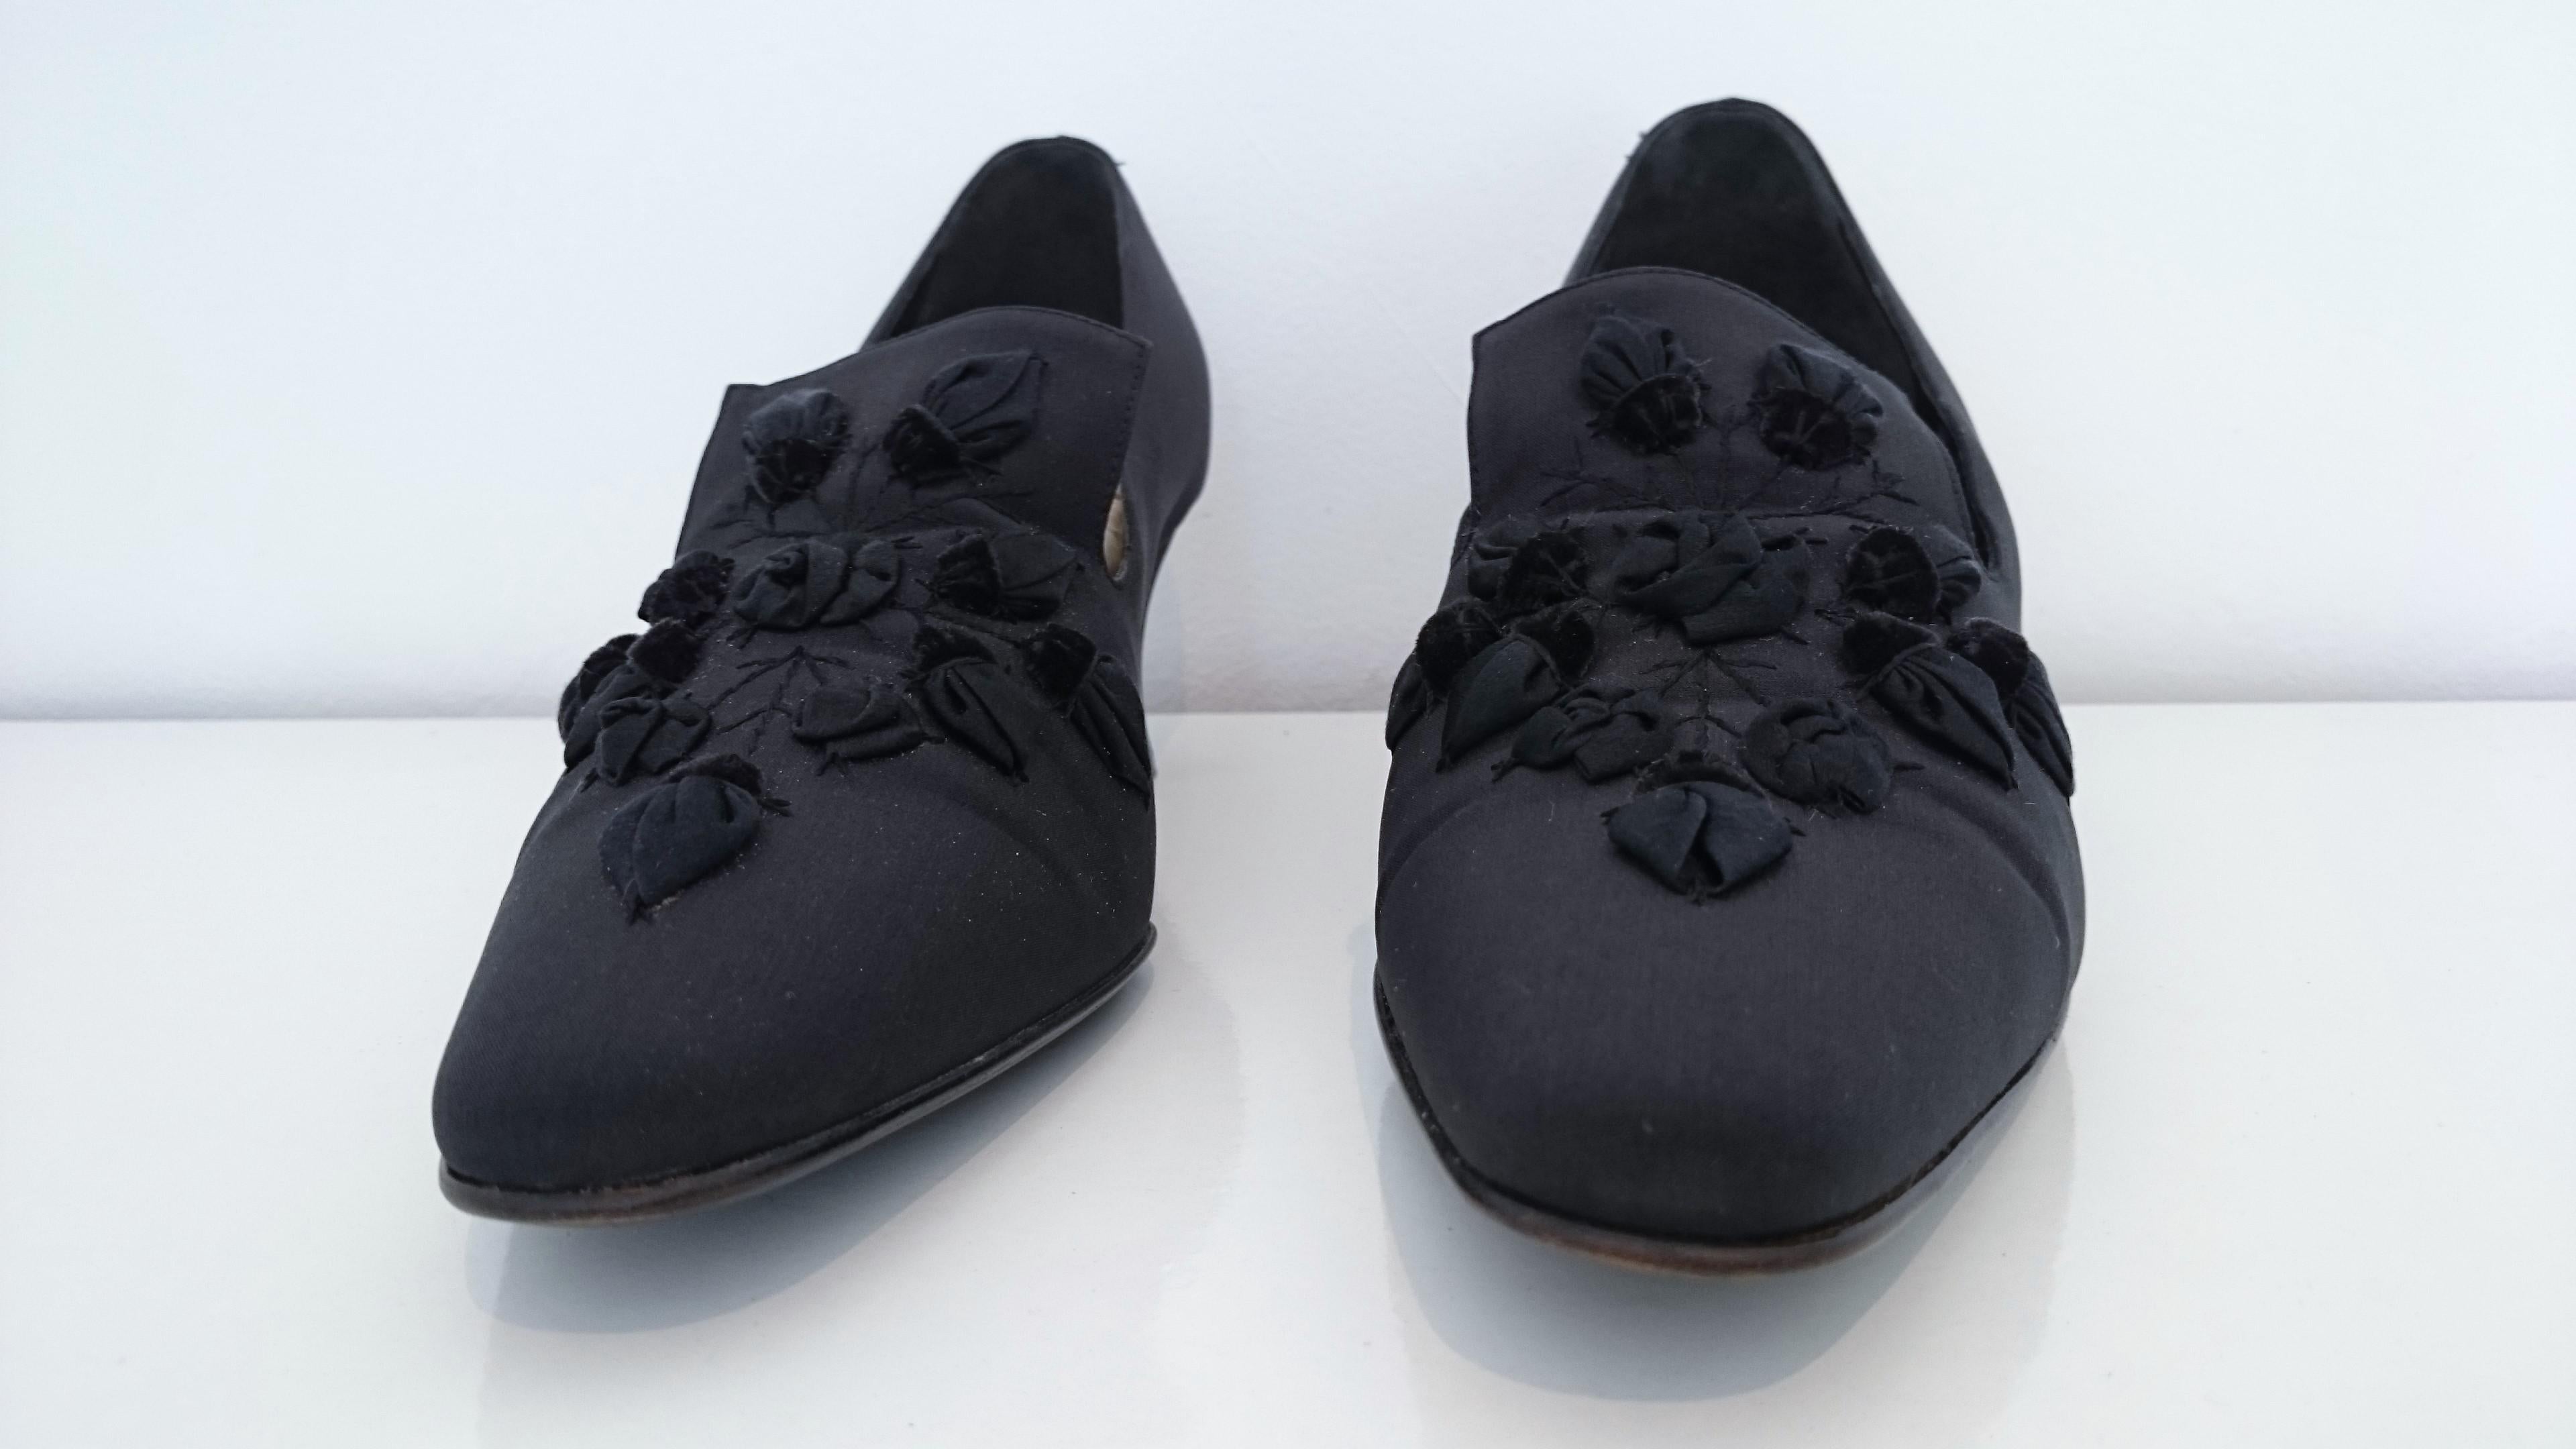 Prada Heels with Petals Design.
Black - Silk
Size 39 1/2
Heel  height: 5 cm
Made in Italy